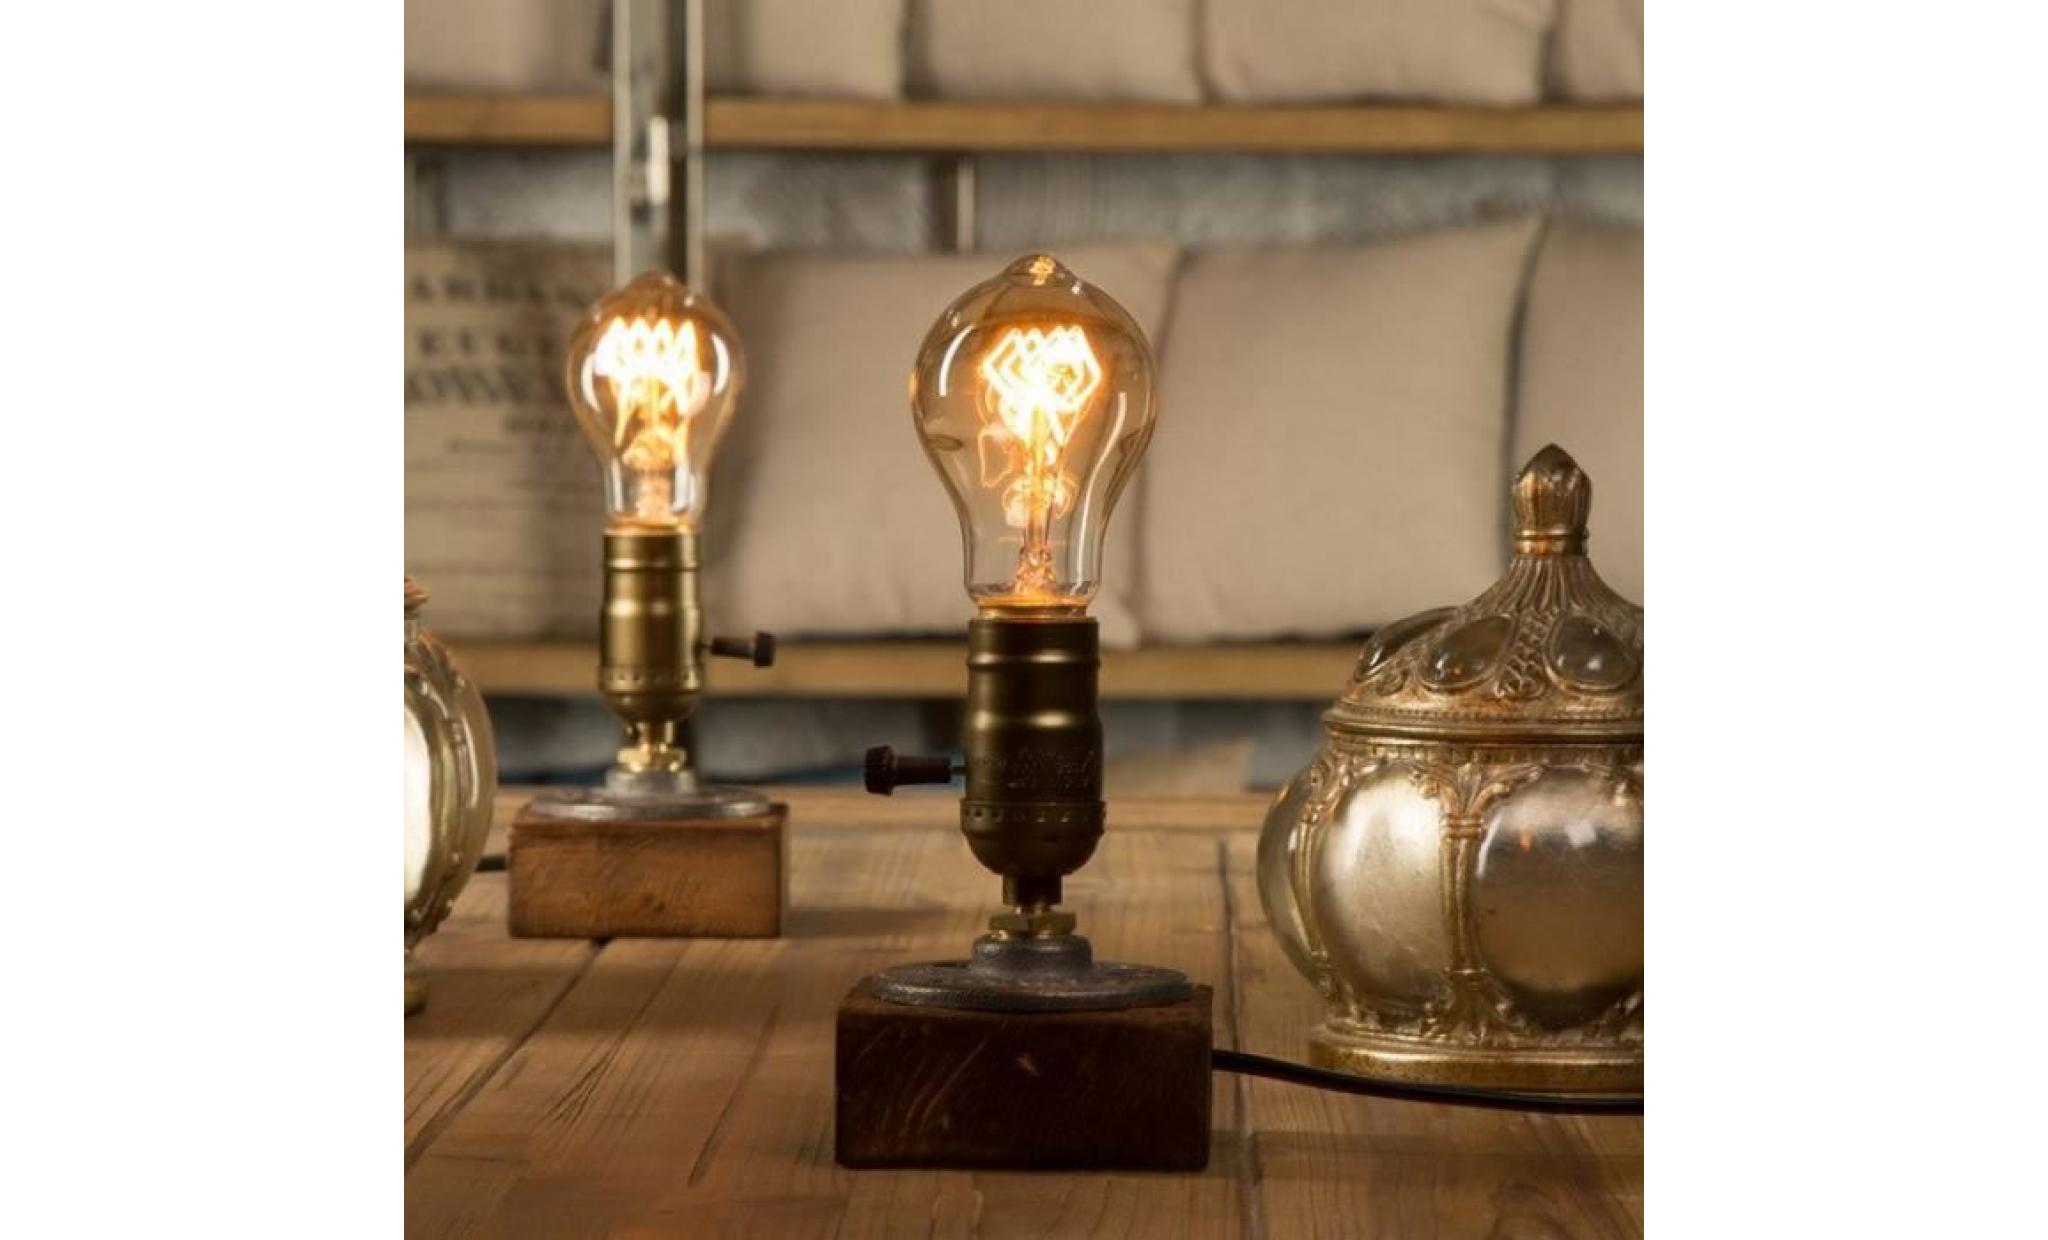 gradateur vintage décor indeutriel table lumière edison ampoule lampe de bureau en bois rétro À la maison Éclairage antique